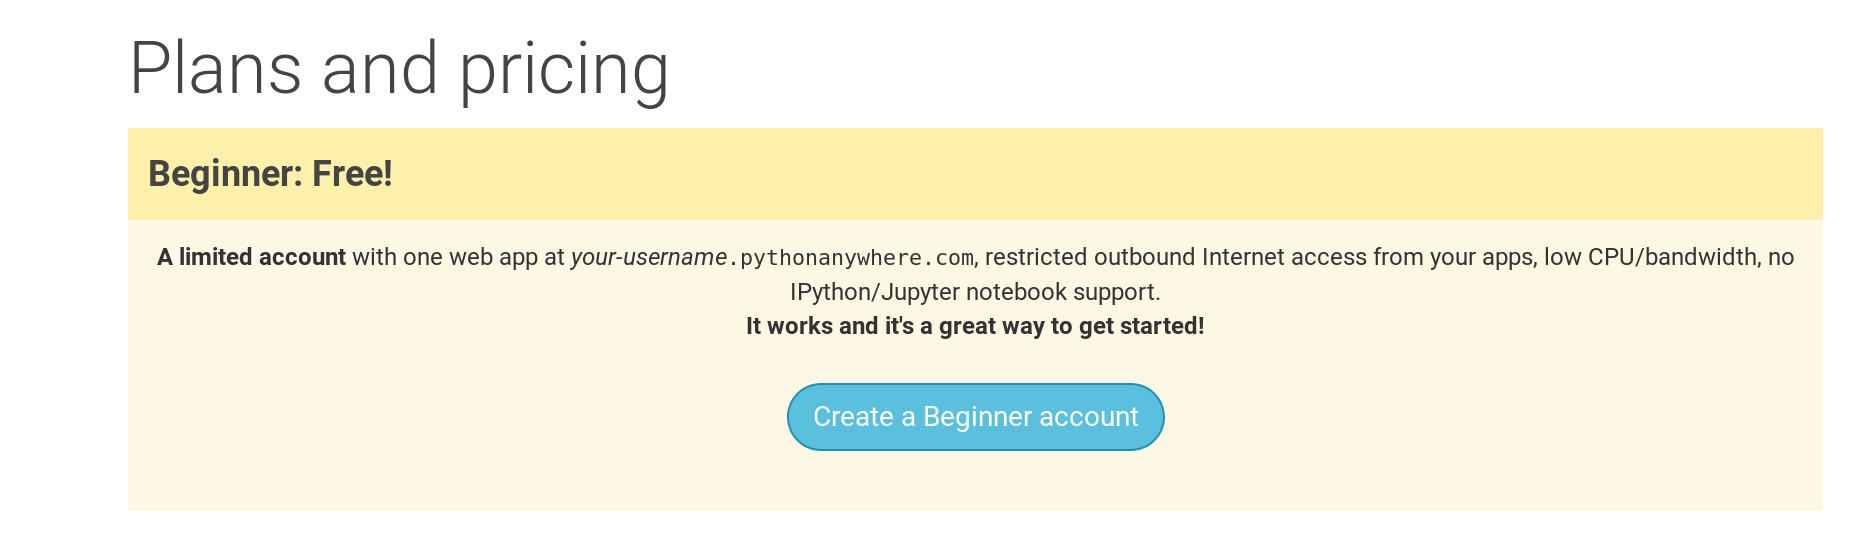 Strona rejestracji PythonAnywhere z przyciskiem, aby utworzyć bezpłatne konto "Beginner".